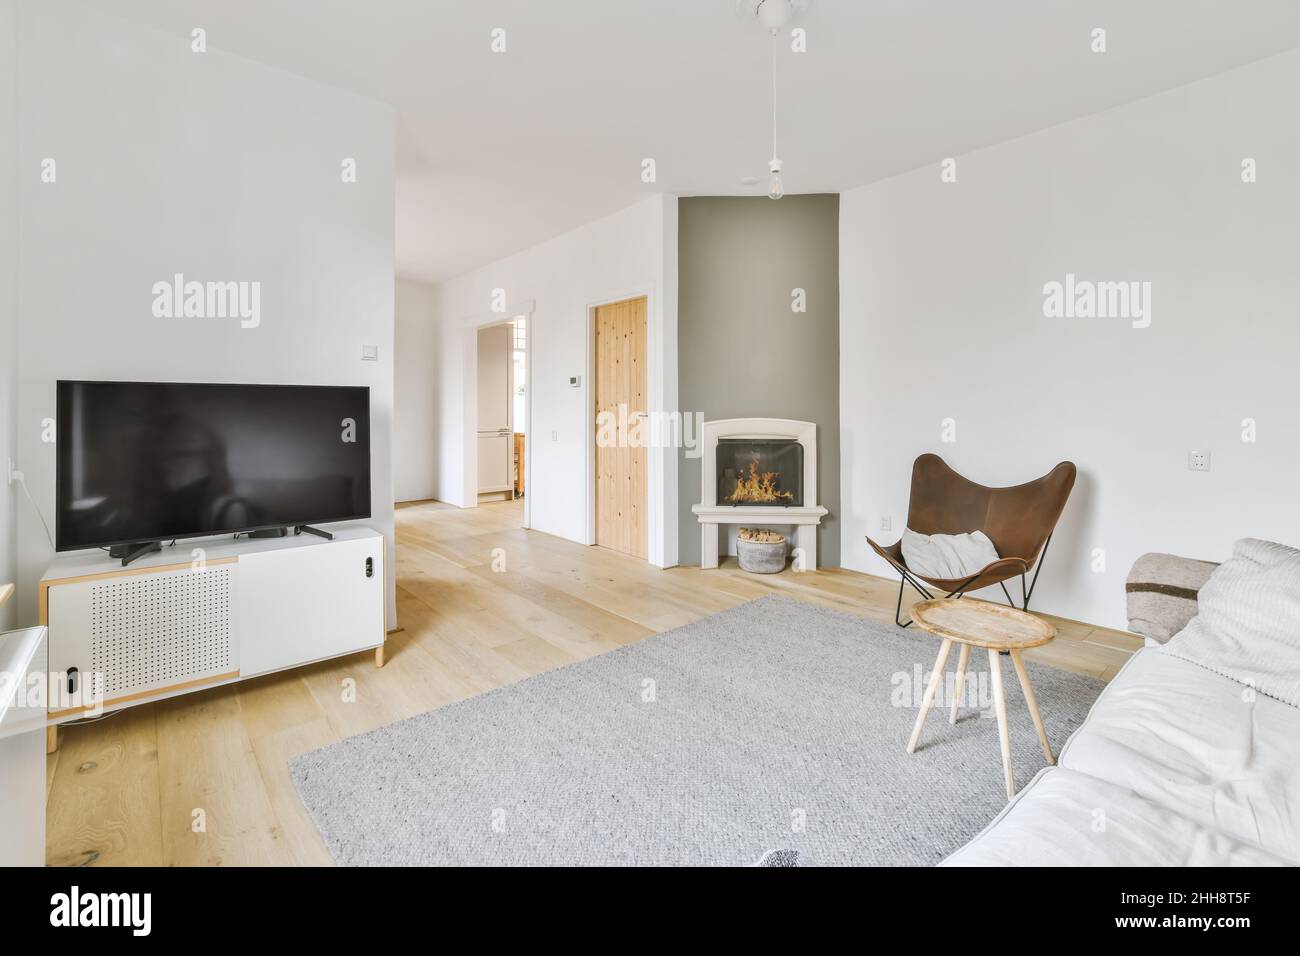 Echtes Foto eines gemütlichen Wohnzimmers mit Kamin, Fernseher, einem runden Tisch auf grauem Teppich, einem stilvollen Stuhl und einem weißen Sofa neben dem Flur Stockfoto